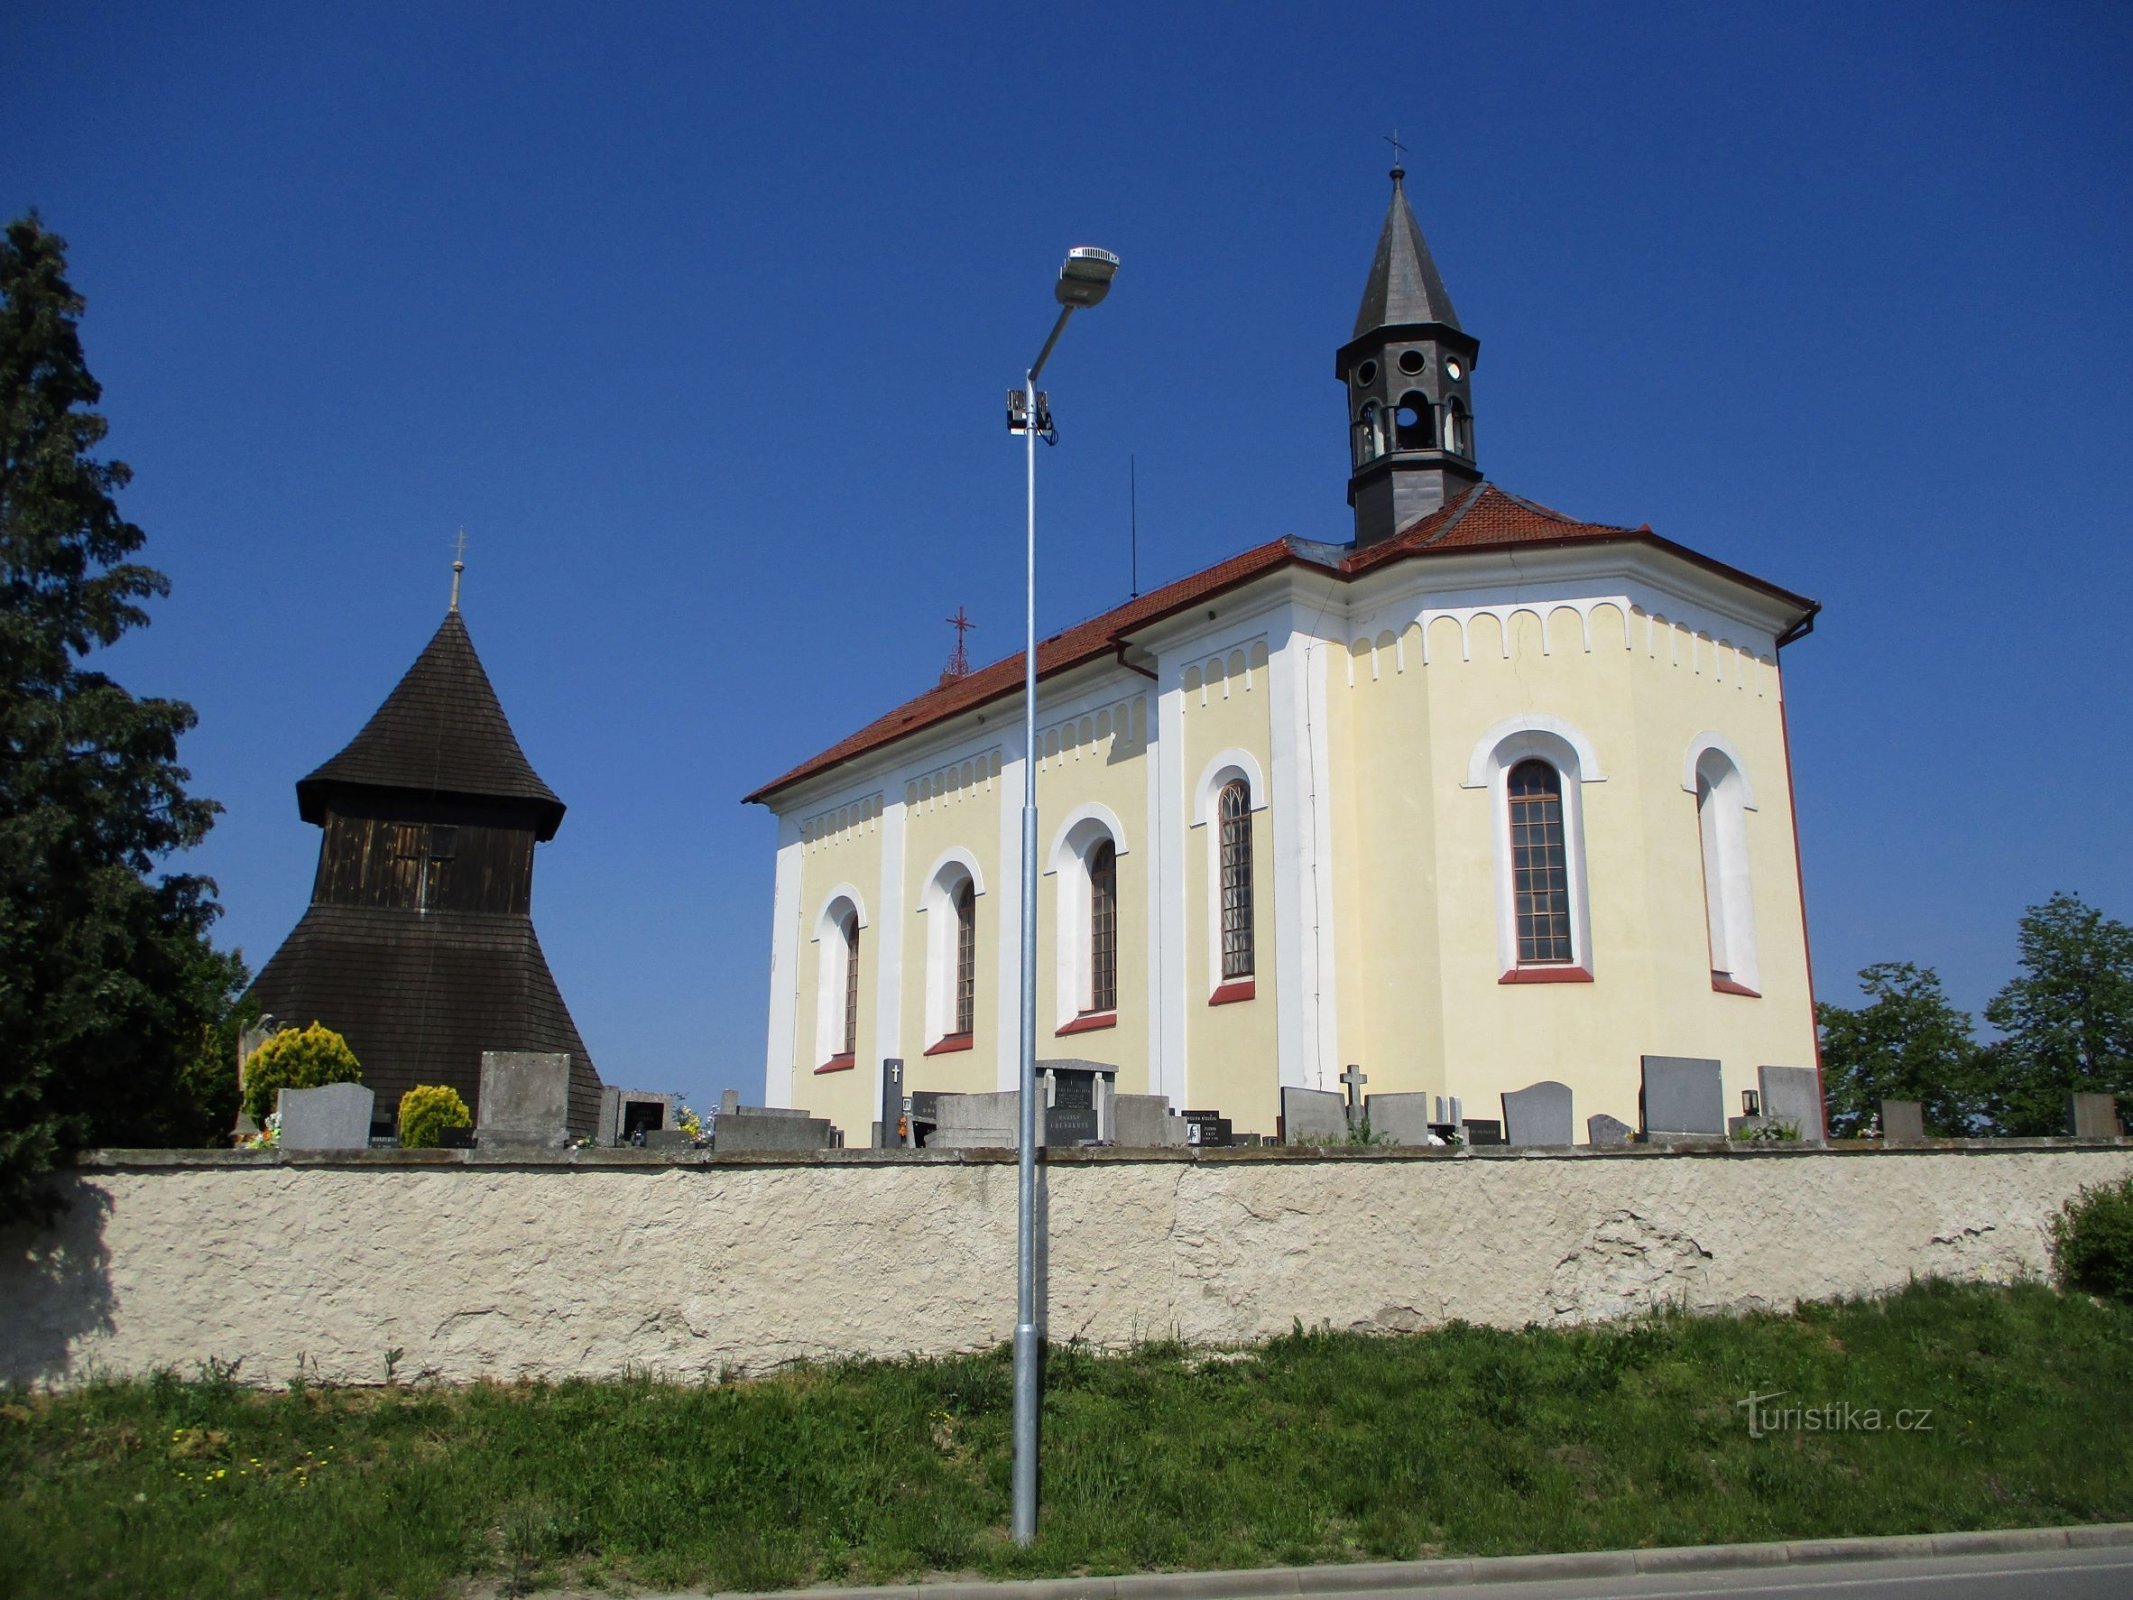 De klokkentoren en de kerk van St. Wenceslas (HorníŘedice, 16.5.2020/XNUMX/XNUMX)